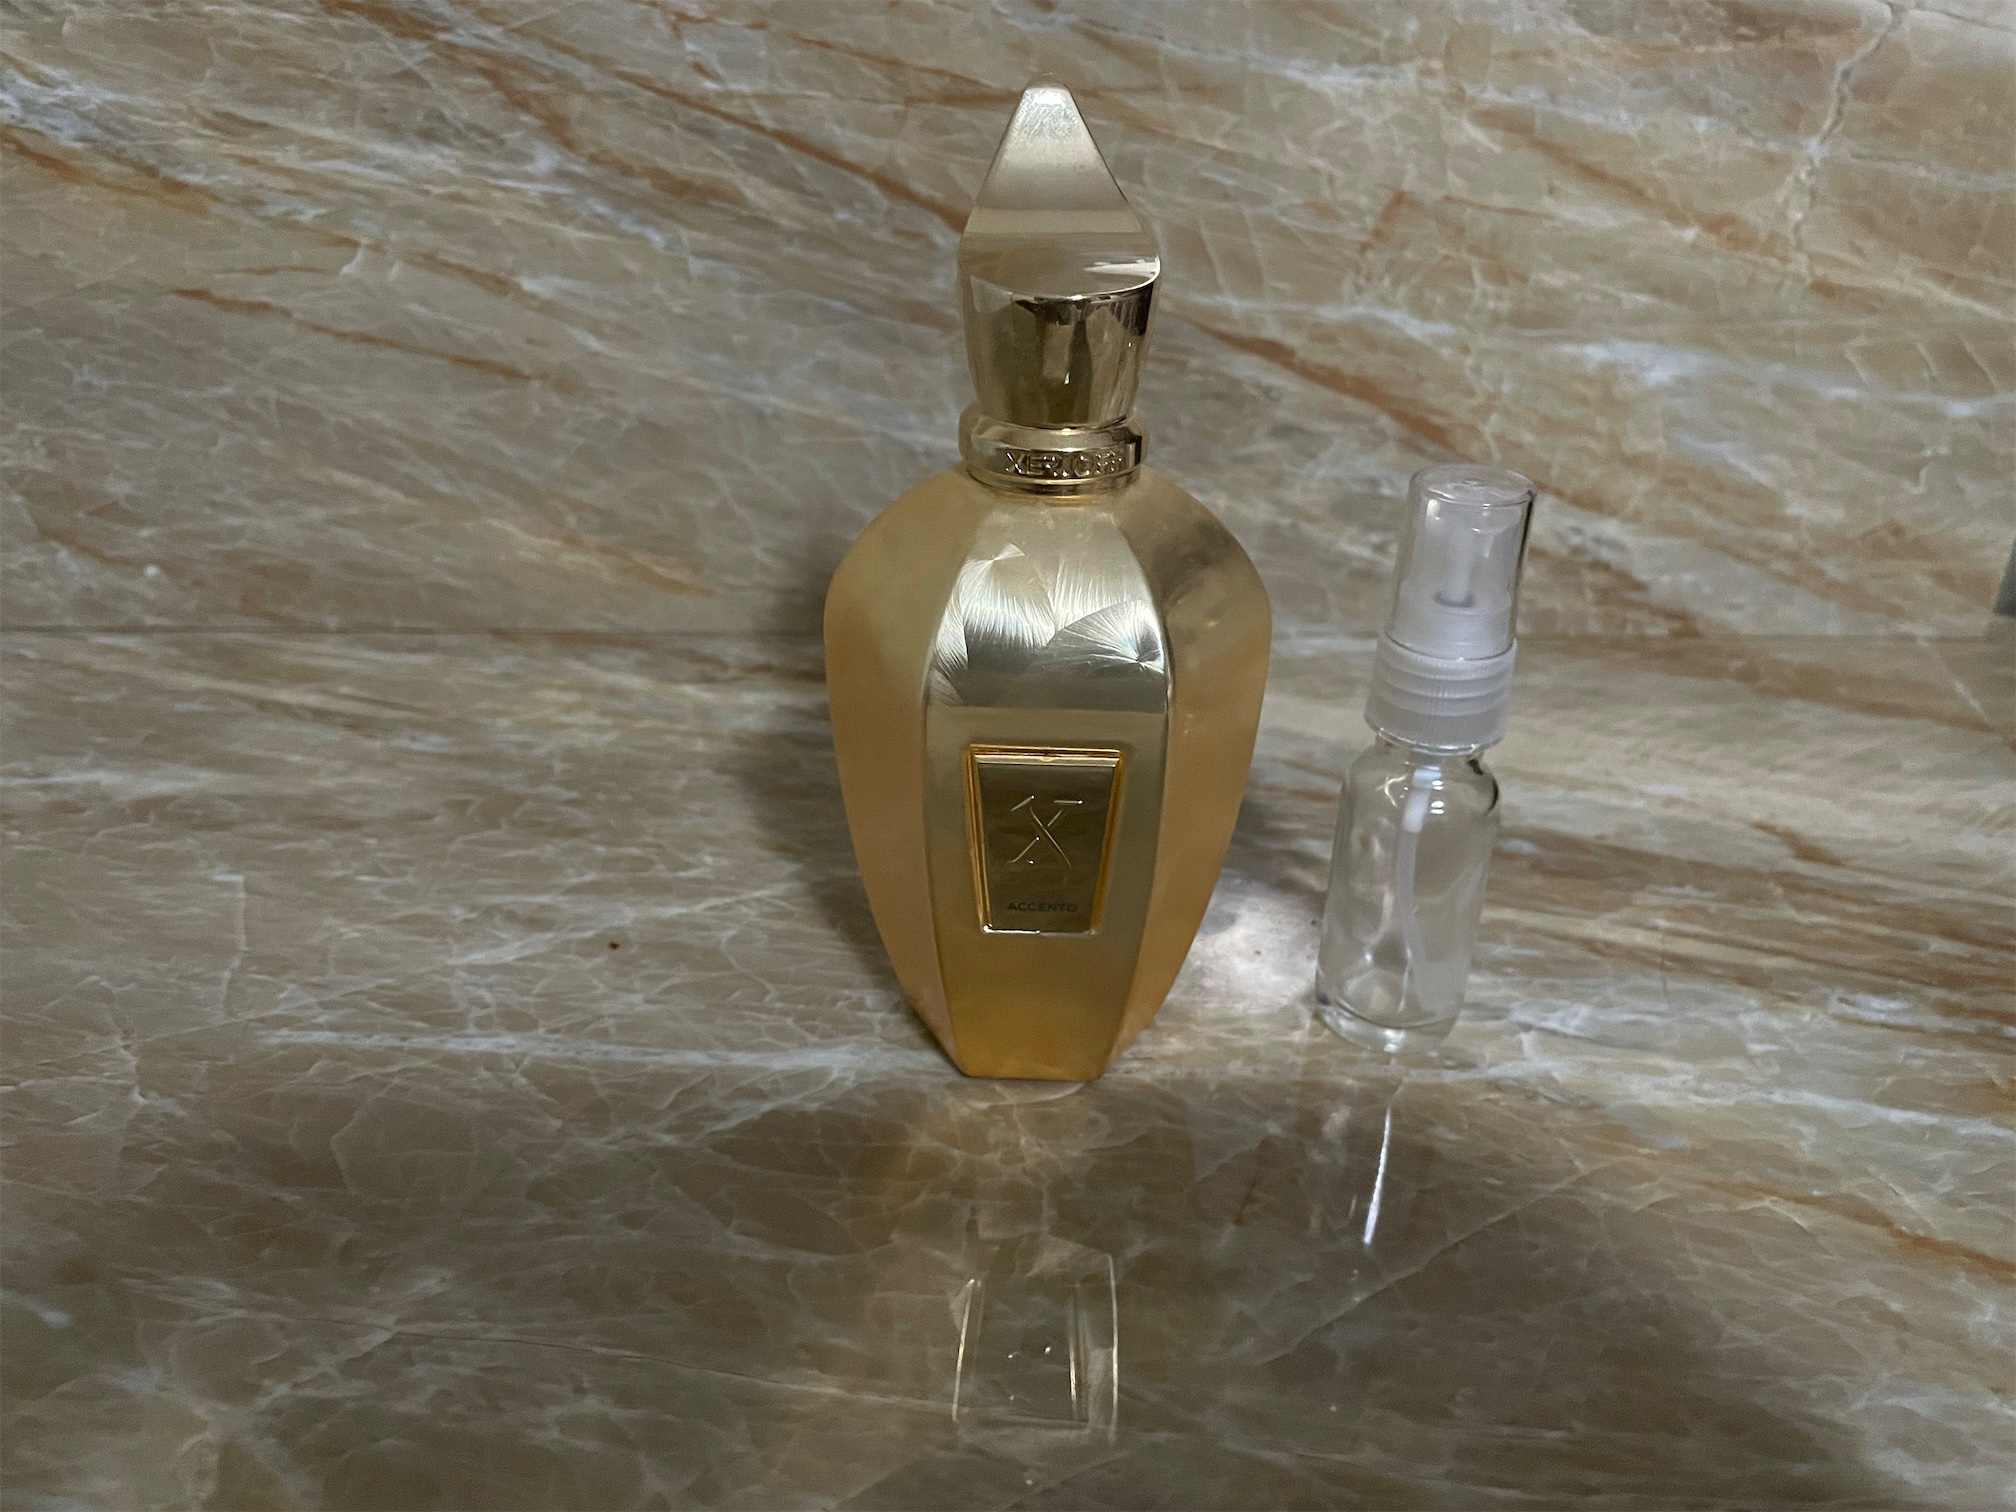 salud y belleza - Venta de Decants de perfumes alta gama de la botella al decants originales